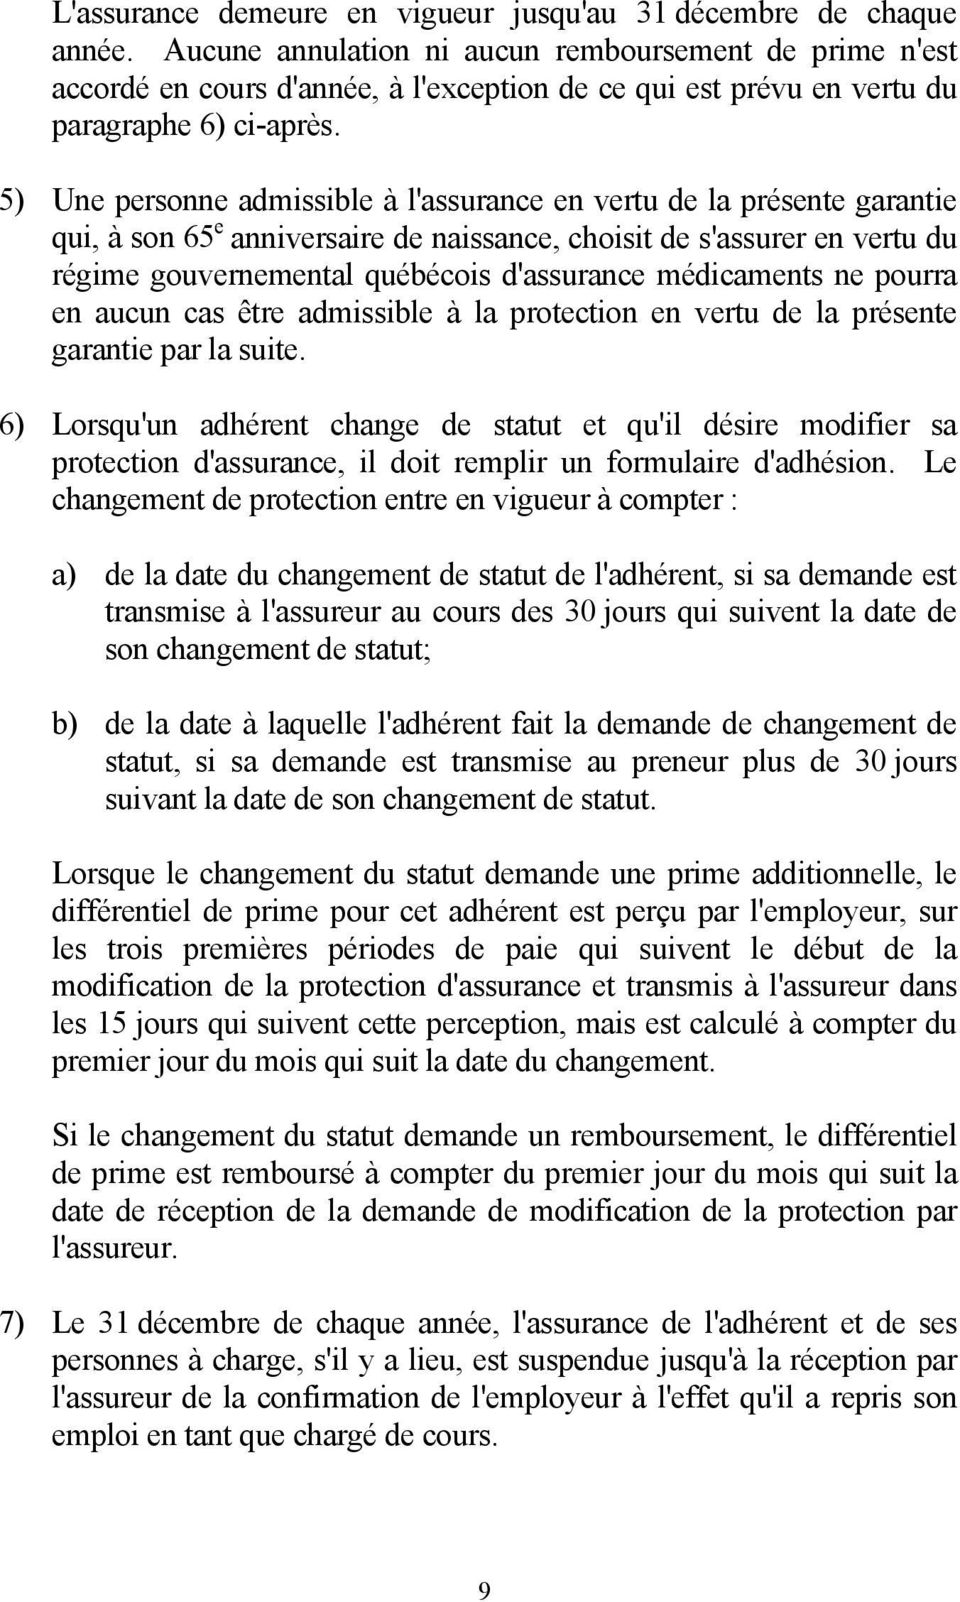 5) Une personne admissible à l'assurance en vertu de la présente garantie qui, à son 65 e anniversaire de naissance, choisit de s'assurer en vertu du régime gouvernemental québécois d'assurance